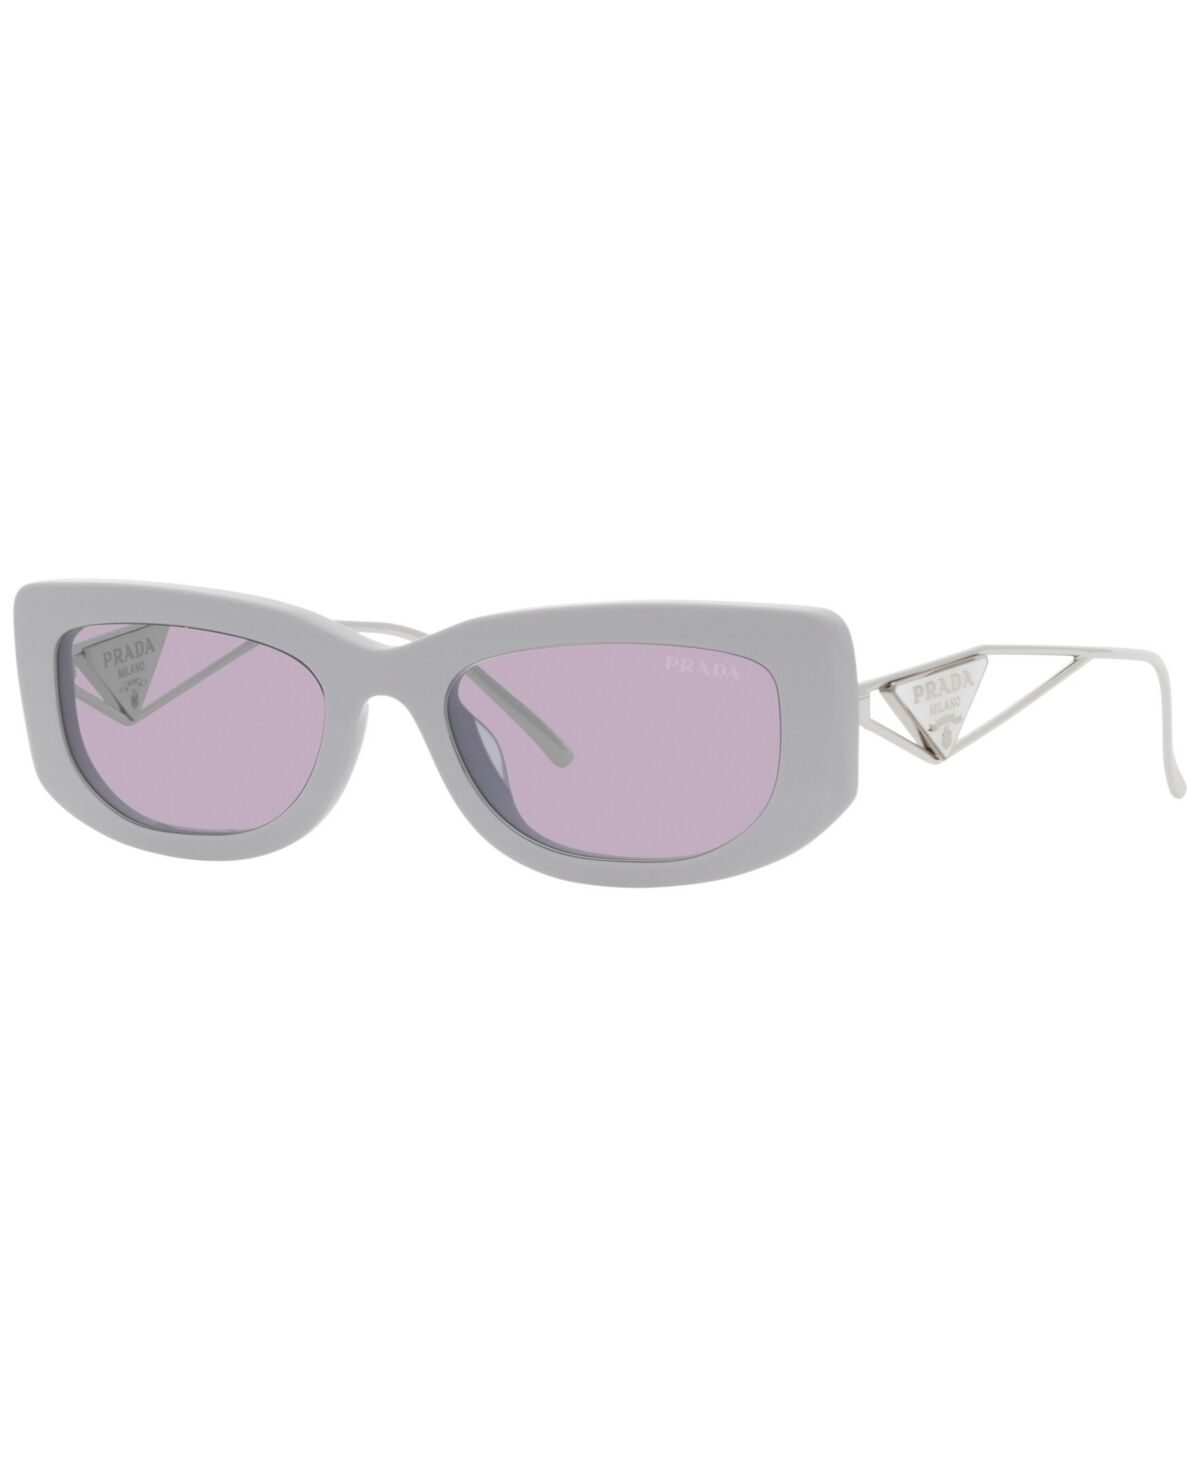 Prada Women's Sunglasses, Pr 14YS - Wisteria